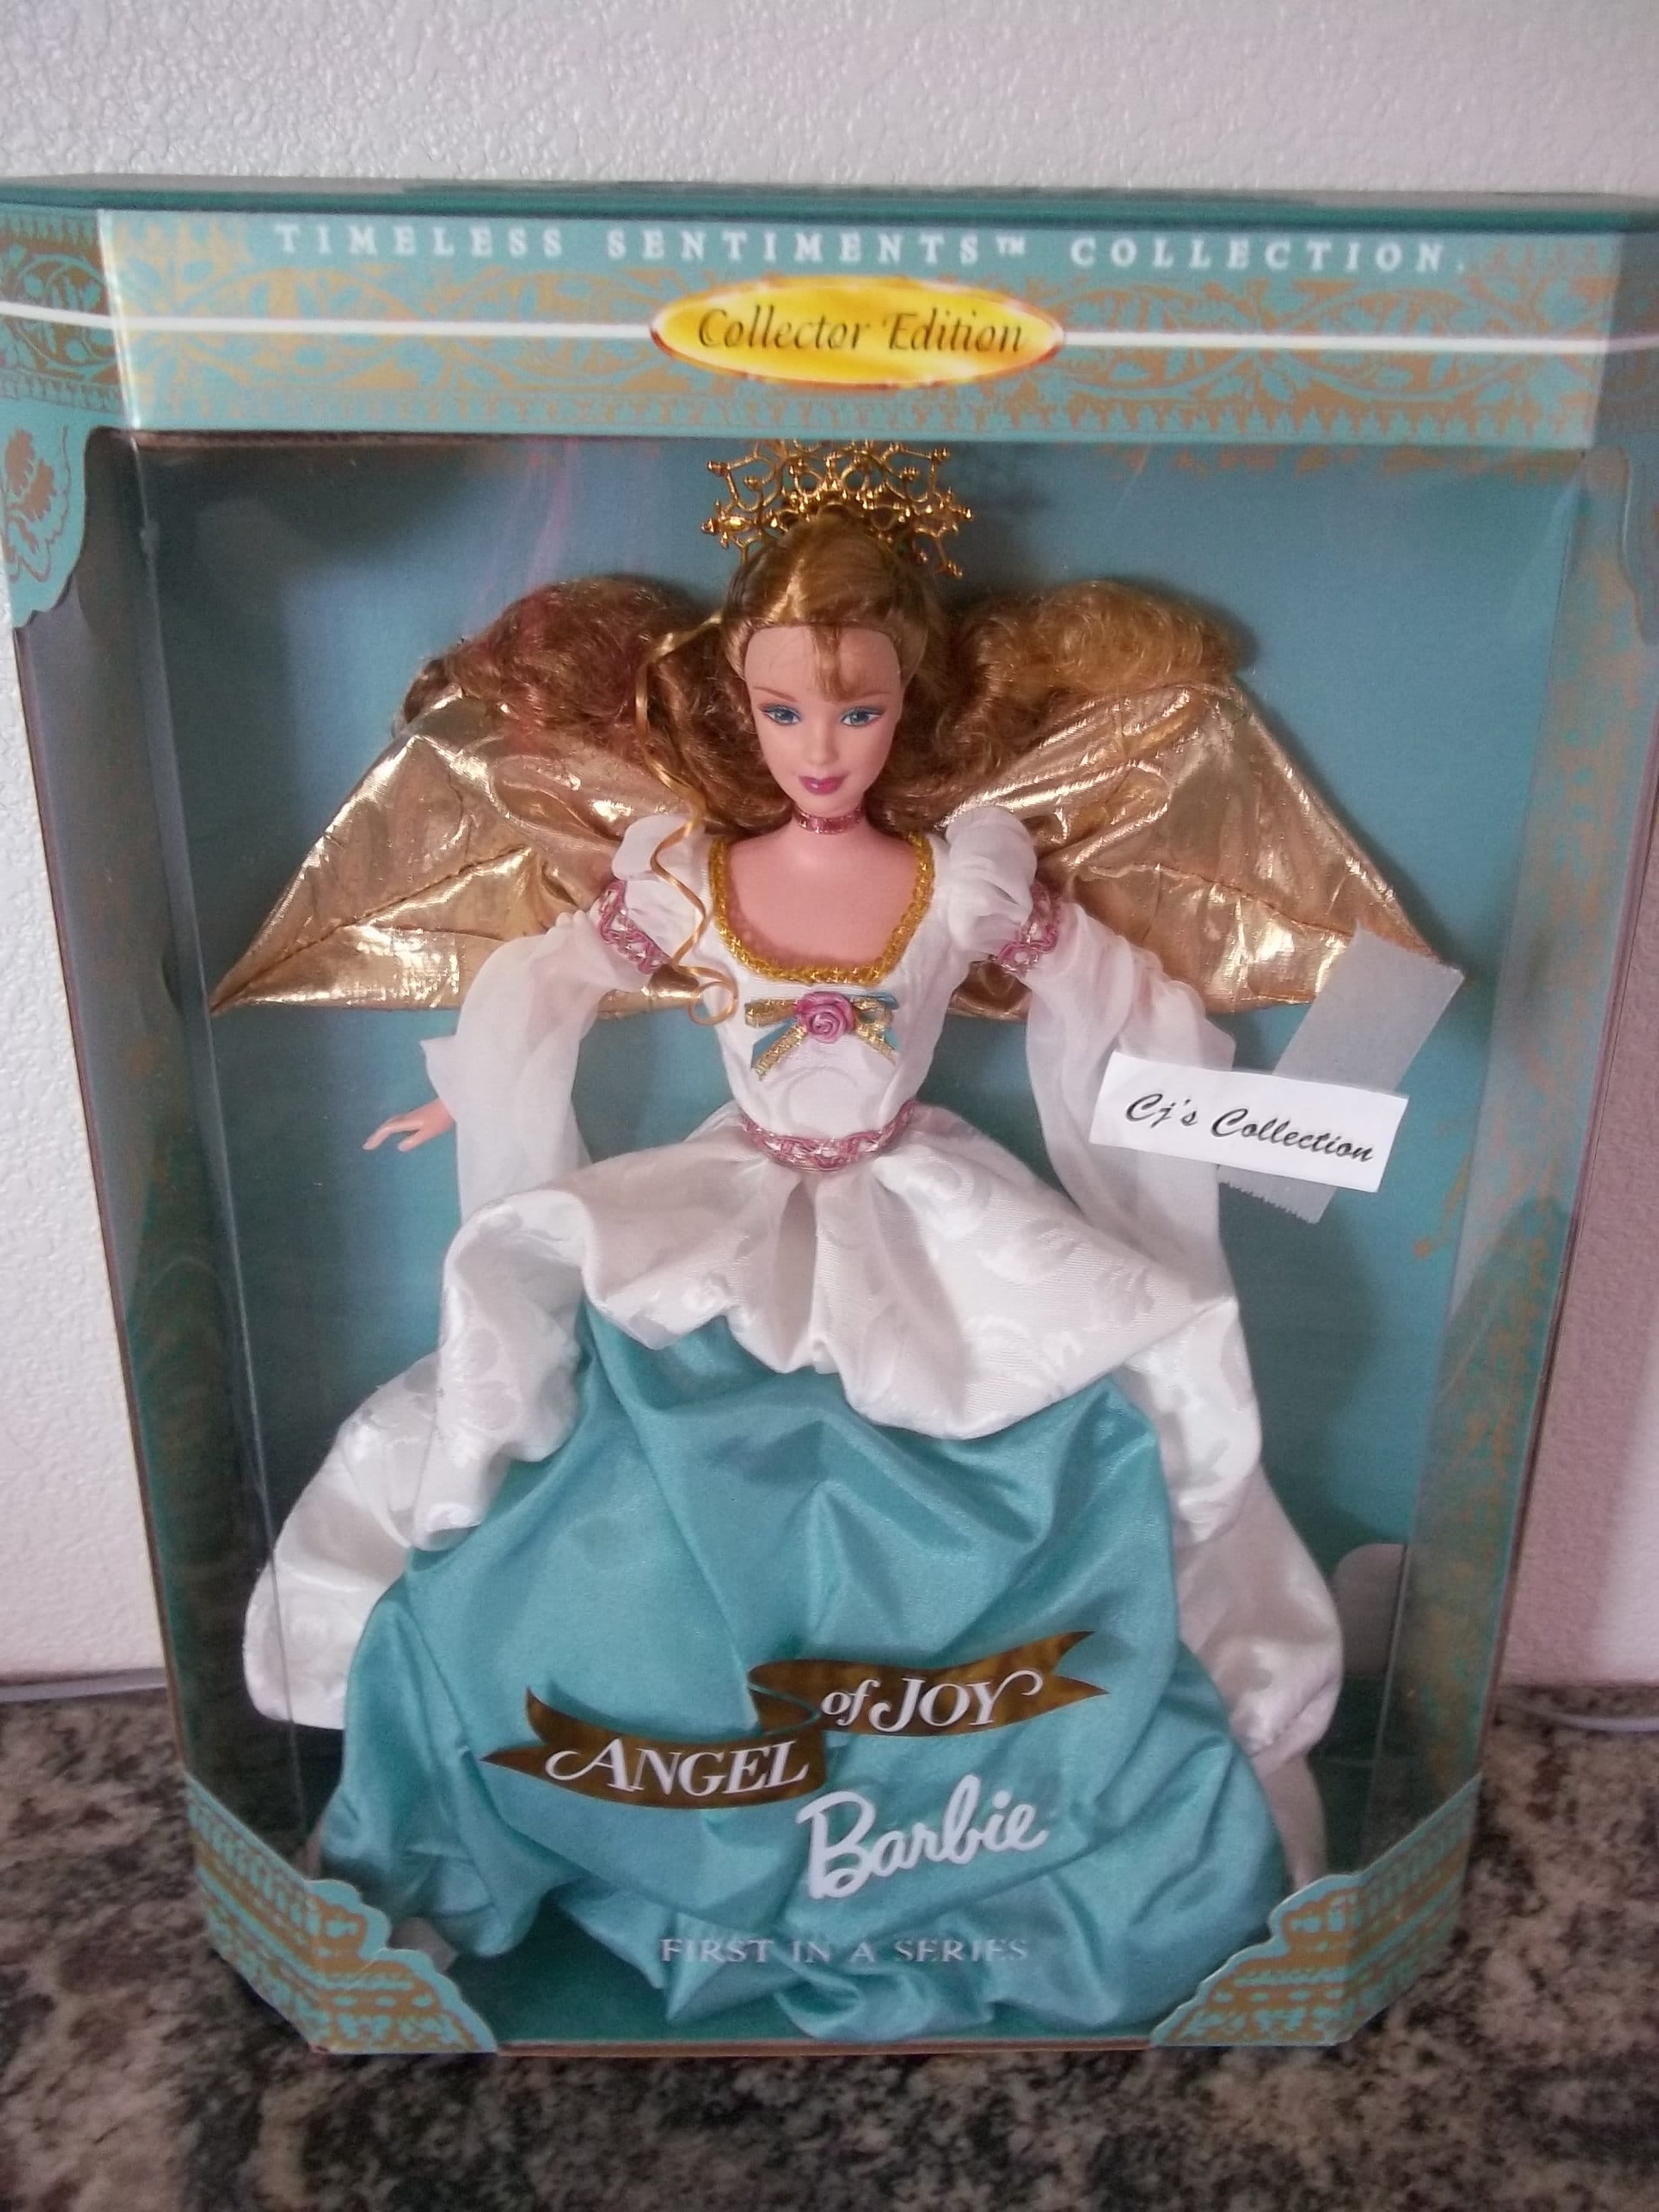 SALE Angel of Joy Barbie 1998 by Mattel 19633 Brand New in - Etsy